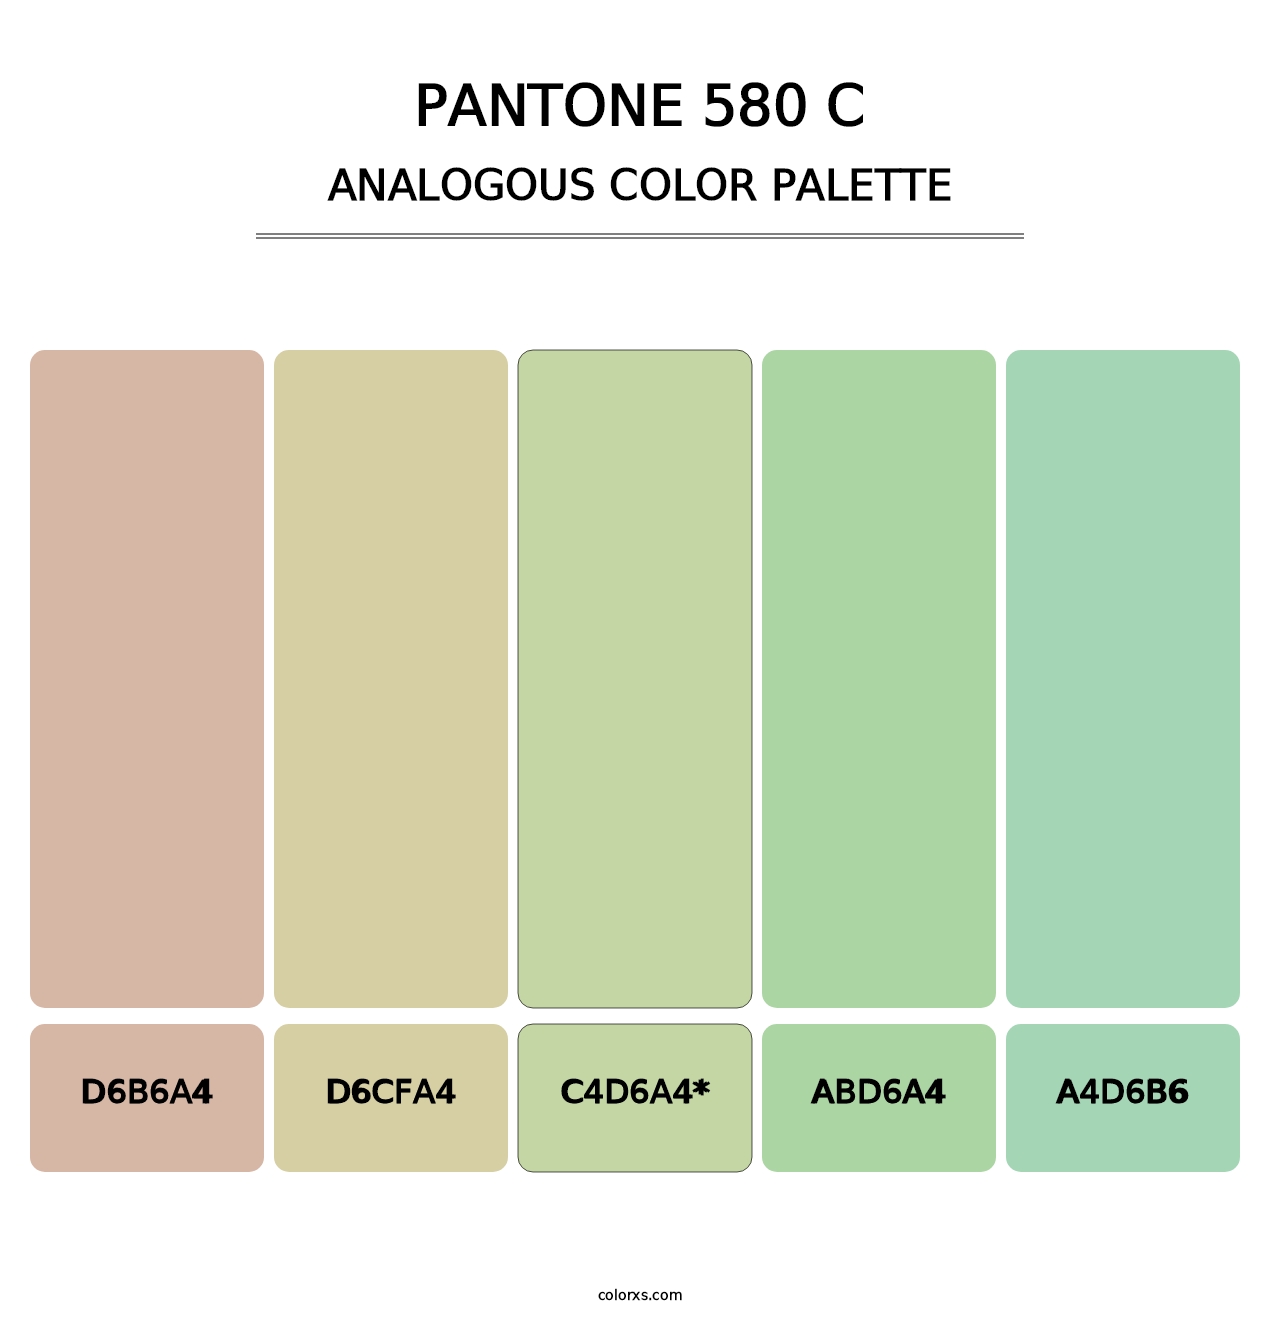 PANTONE 580 C - Analogous Color Palette